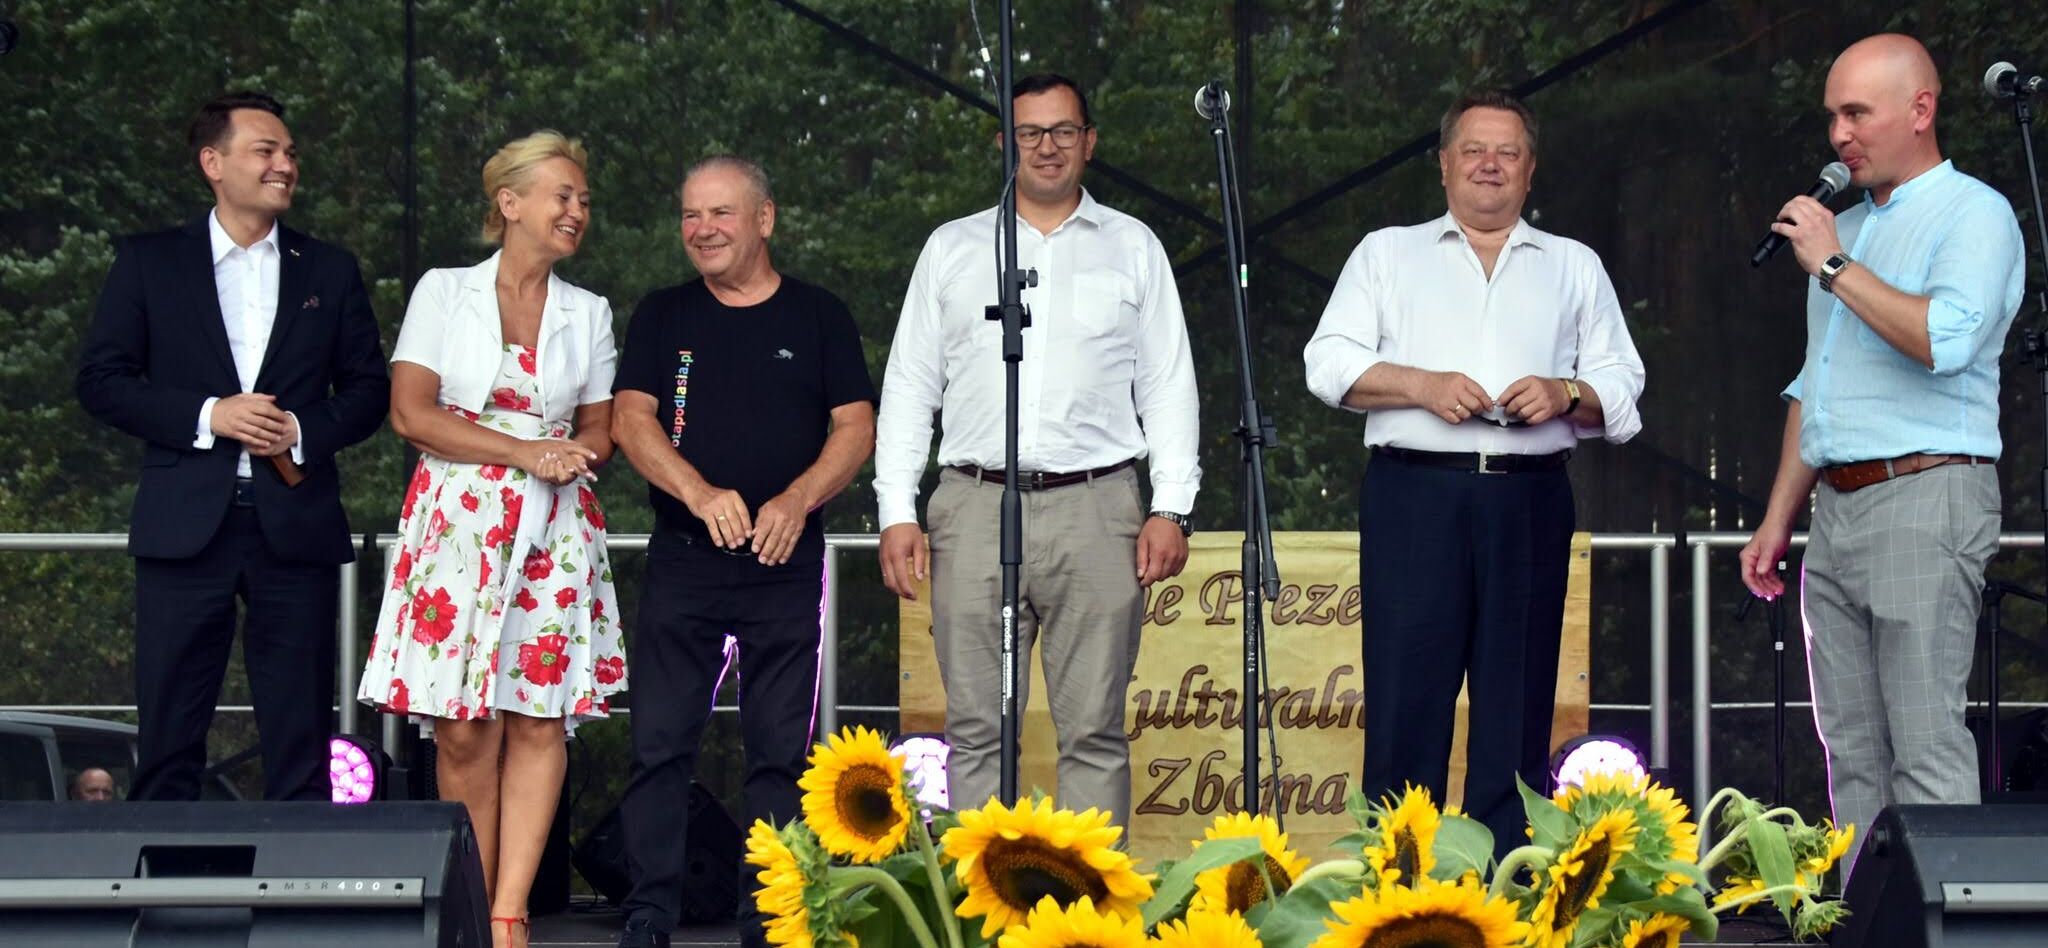 osoby uczestniczące w wydarzeniu stoją na scenie, wśród nich wicemarszałek Marek Olbryś